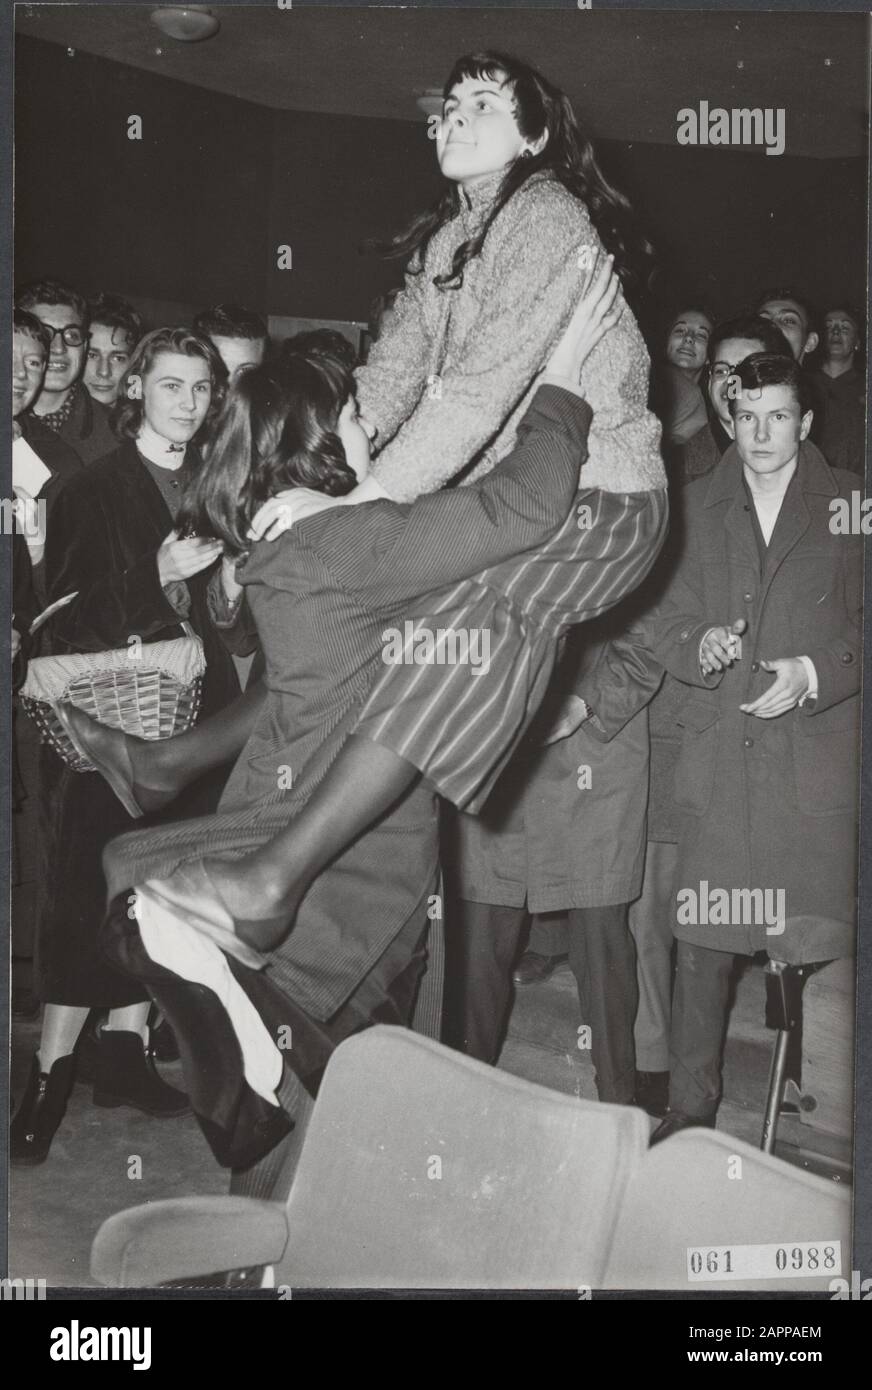 A Amsterdam, trois cinémas joueront des records du rock américain « n » roll King Elvis Presley lors de la pause de midi de vendredi, comme publicité pour le film Love me tender que la semaine prochaine apparaîtra. Sur le premier moyen il y avait un grand nombre de jeunes enthousiastes qui, à cause de la musique passionnante, n'ont pas séjourné dans les sièges pendant longtemps et dansaient le Rock and Roll entre les rangées. Date: 7 décembre 1956 lieu: Amsterdam, Noord-Holland mots clés: Cinémas, danses, jeunes, musique Banque D'Images